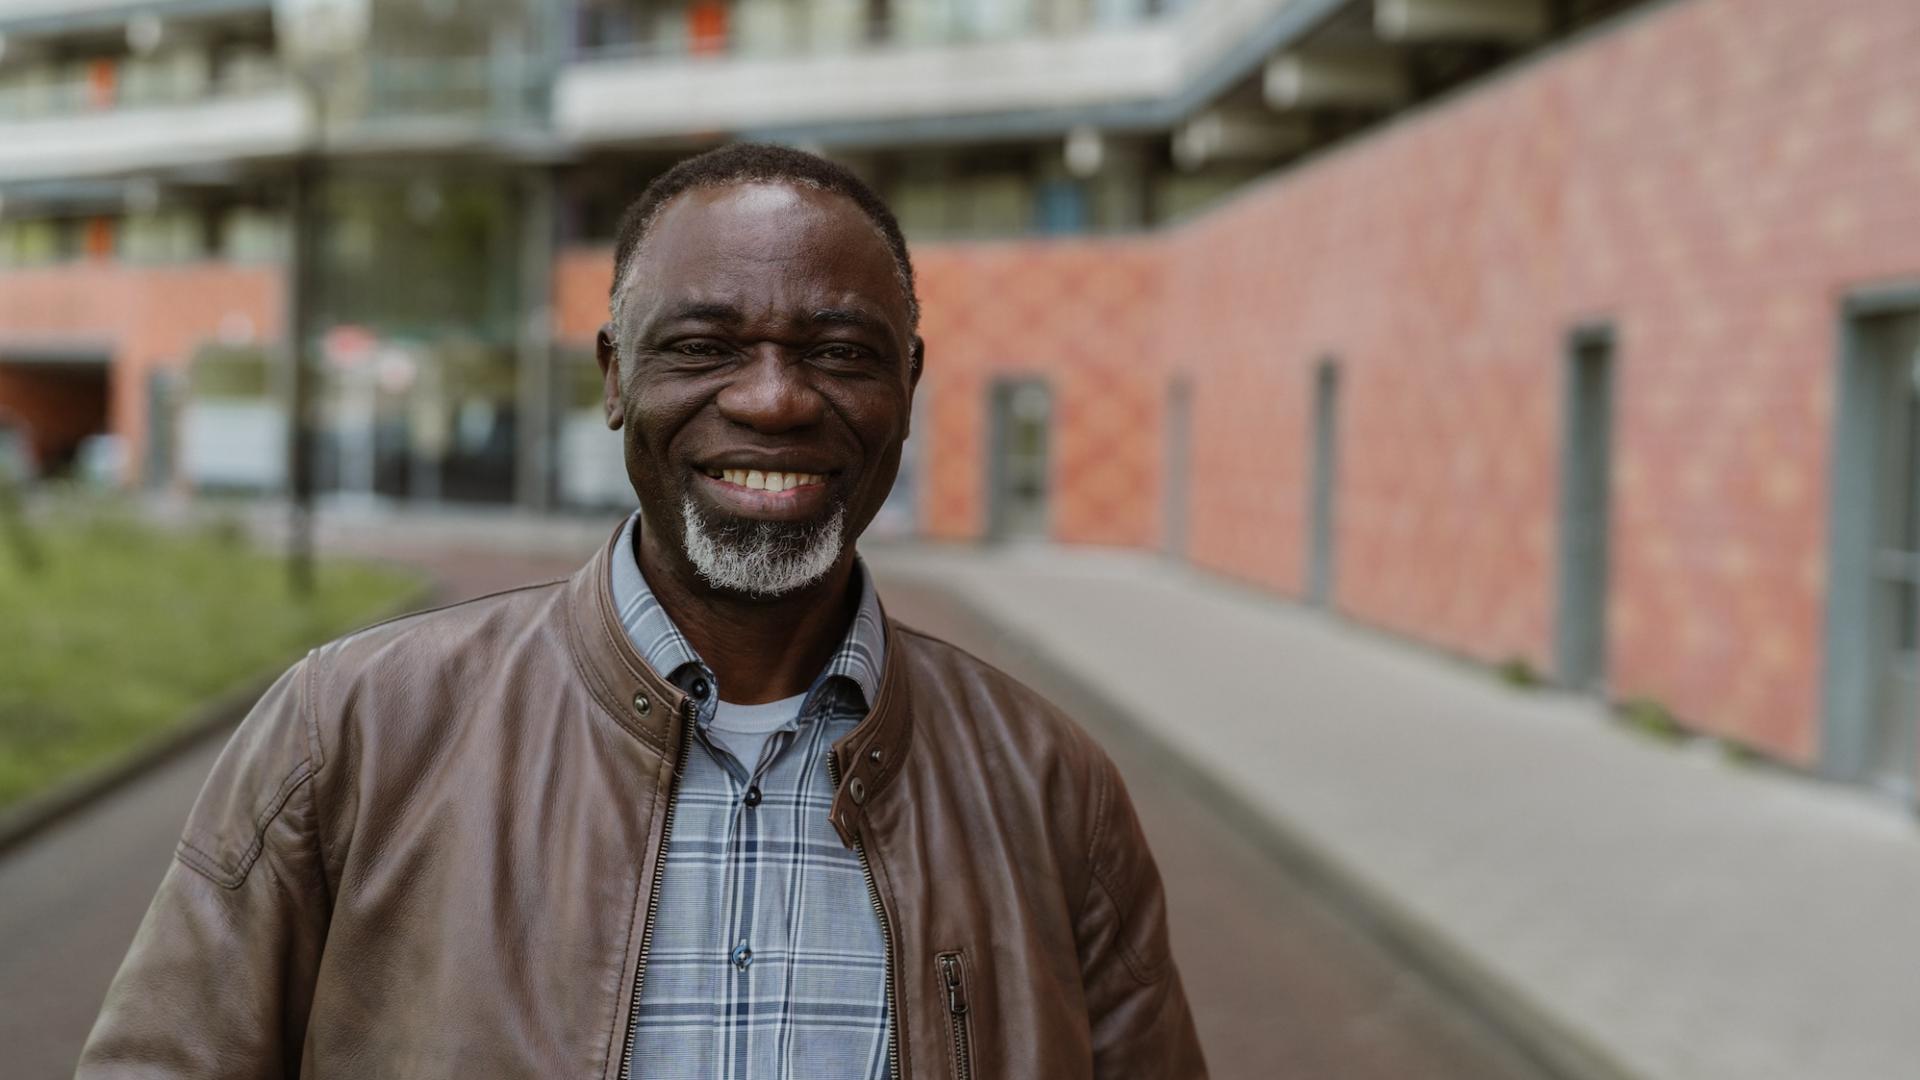 Moses staat voor een flatgebouw in Amsterdam Zuidoost. Hij kijkt lachend in de camera.